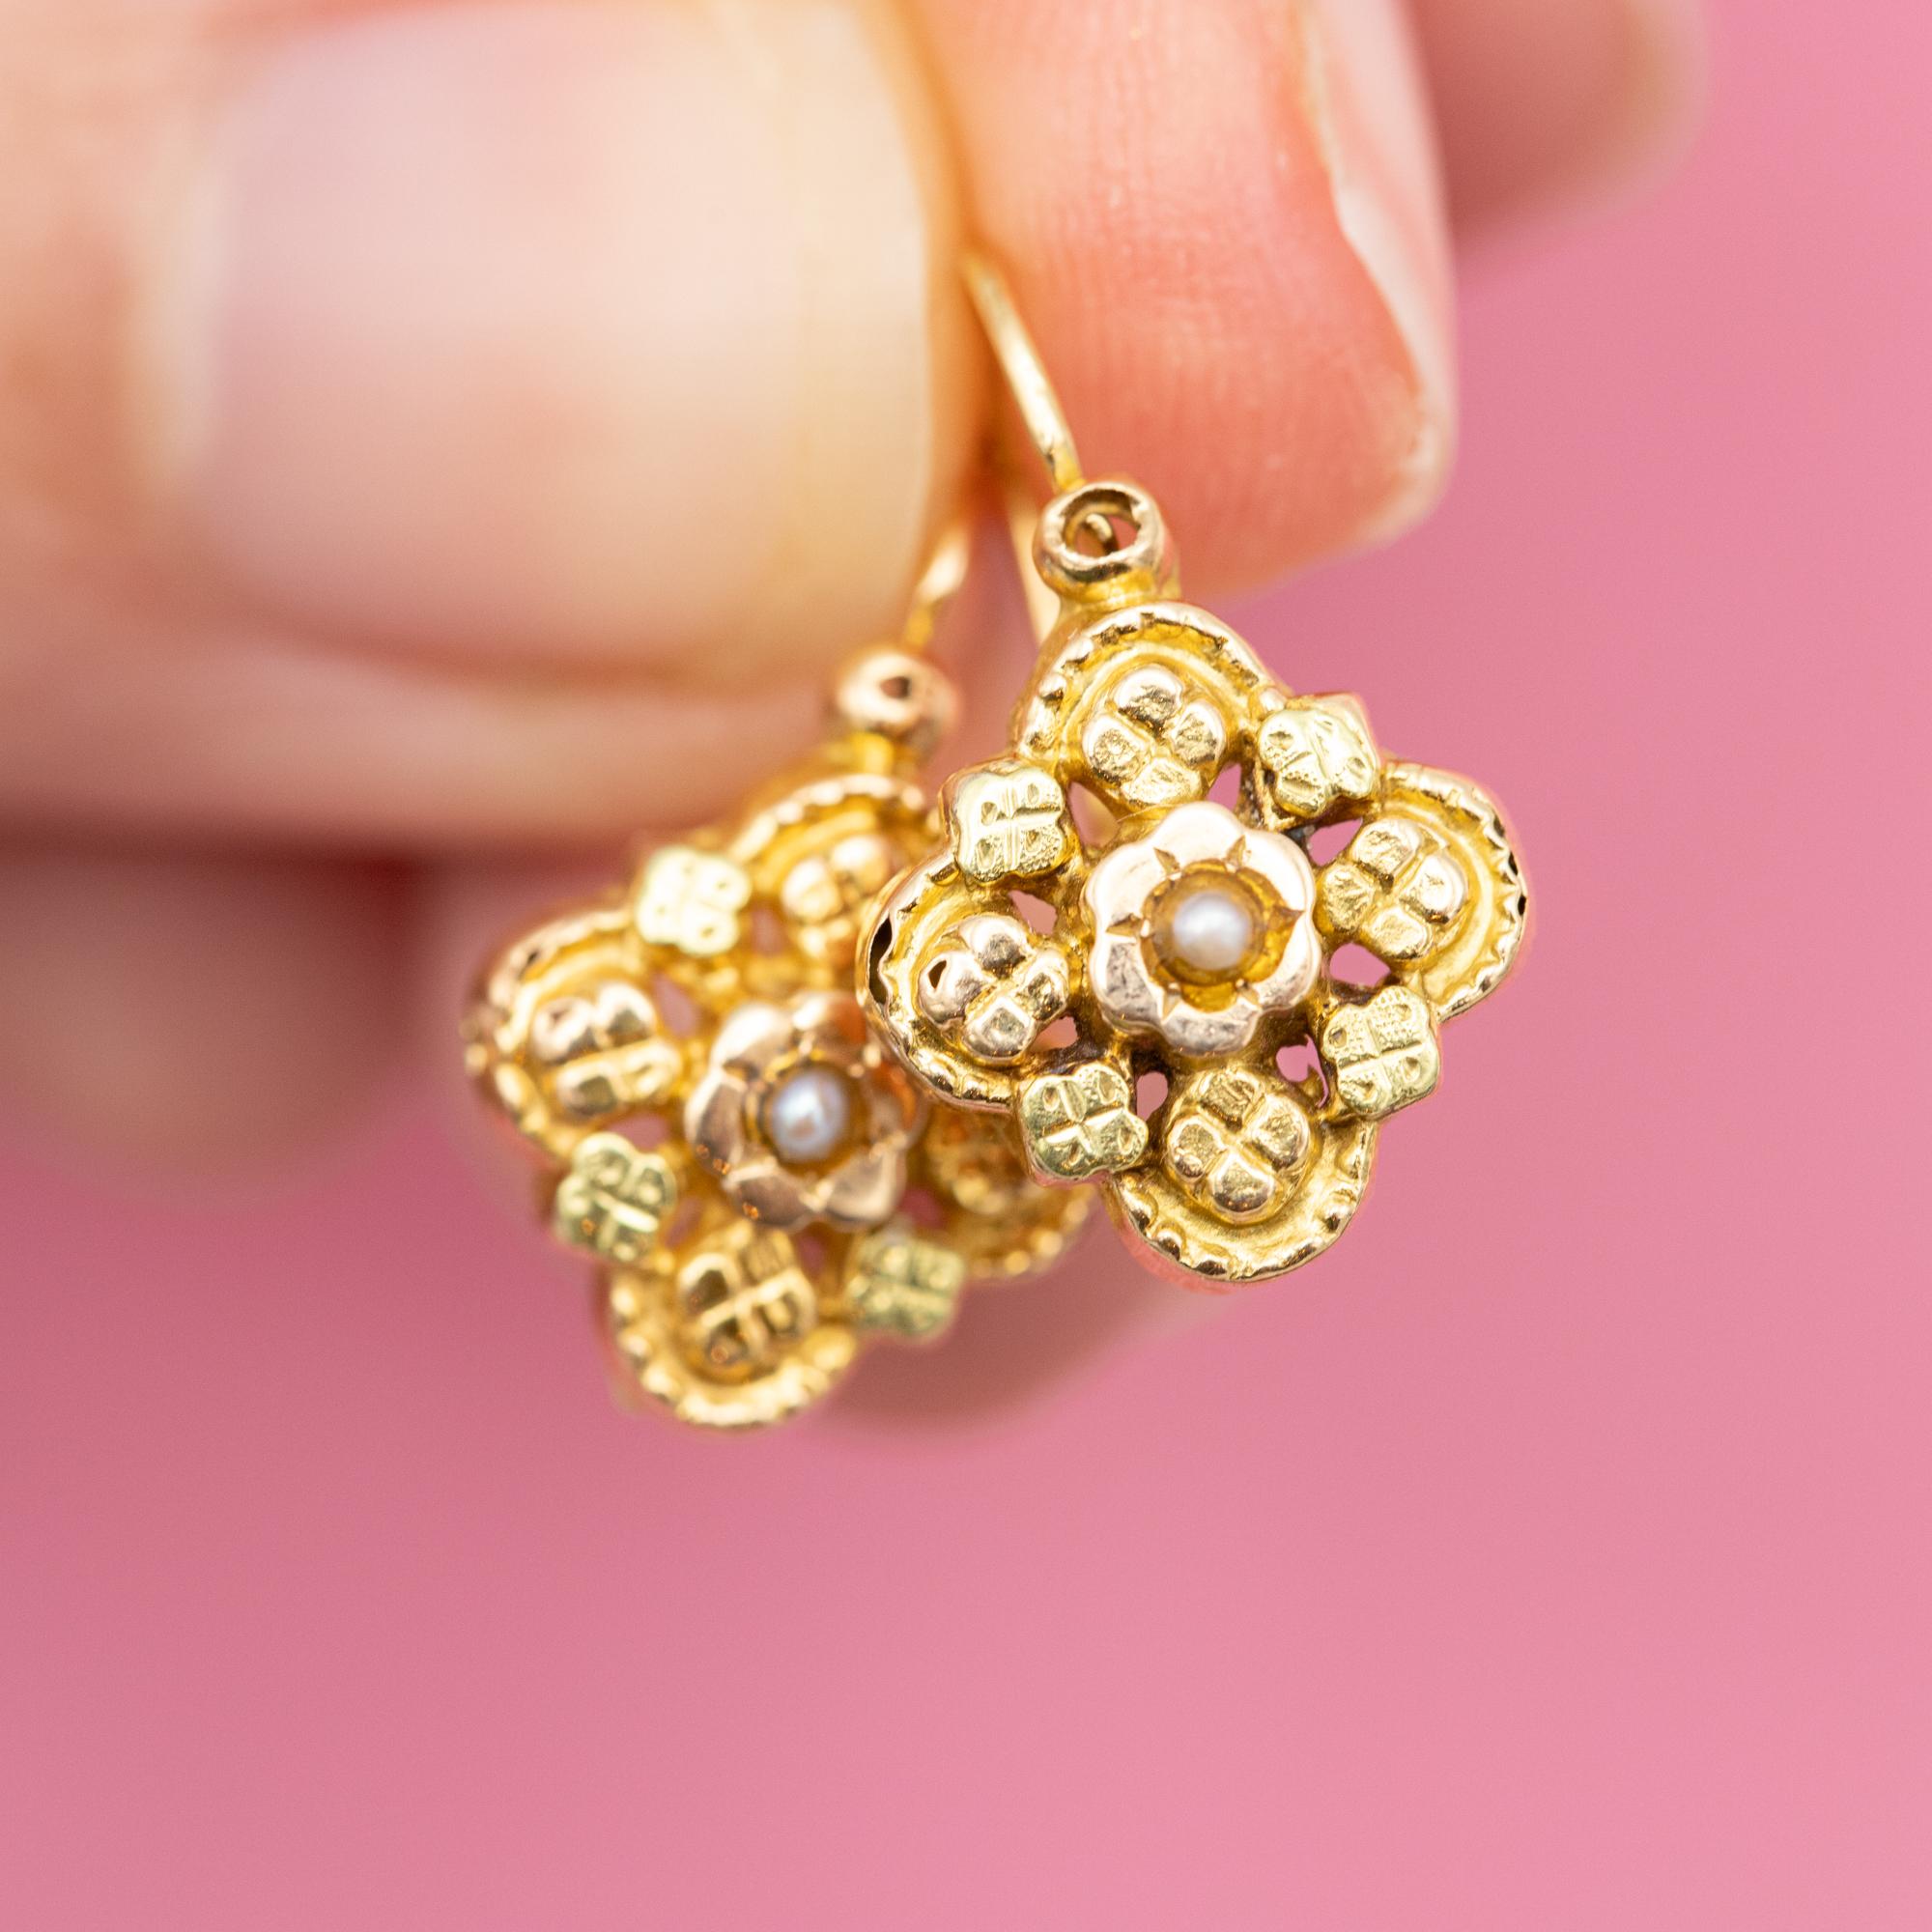 Zum Verkauf stehen diese hübschen französischen Napoleon-III-Ohrringe. Diese Ohrringe aus 18-karätigem Gelbgold (auch Schläfer genannt) haben einen Verschluss auf der Vorderseite und sind mit blumenförmigen Ornamenten und kleinen Saatperlen verziert